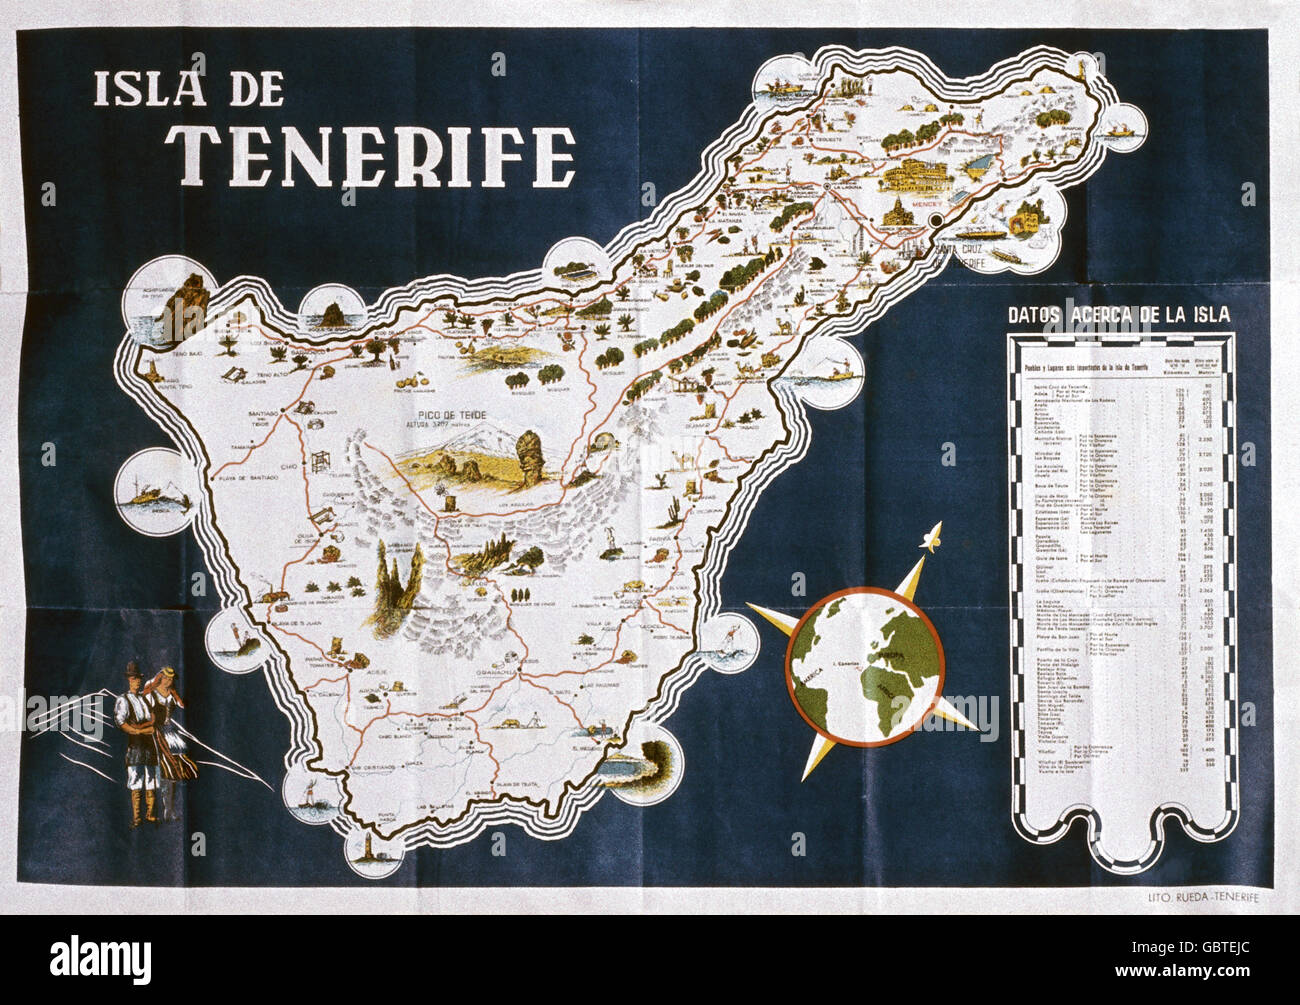 Géographie / voyage, Espagne, Iles Canaries, Ténérife, carte topographique, 1958, droits supplémentaires-Clearences-non disponible Banque D'Images